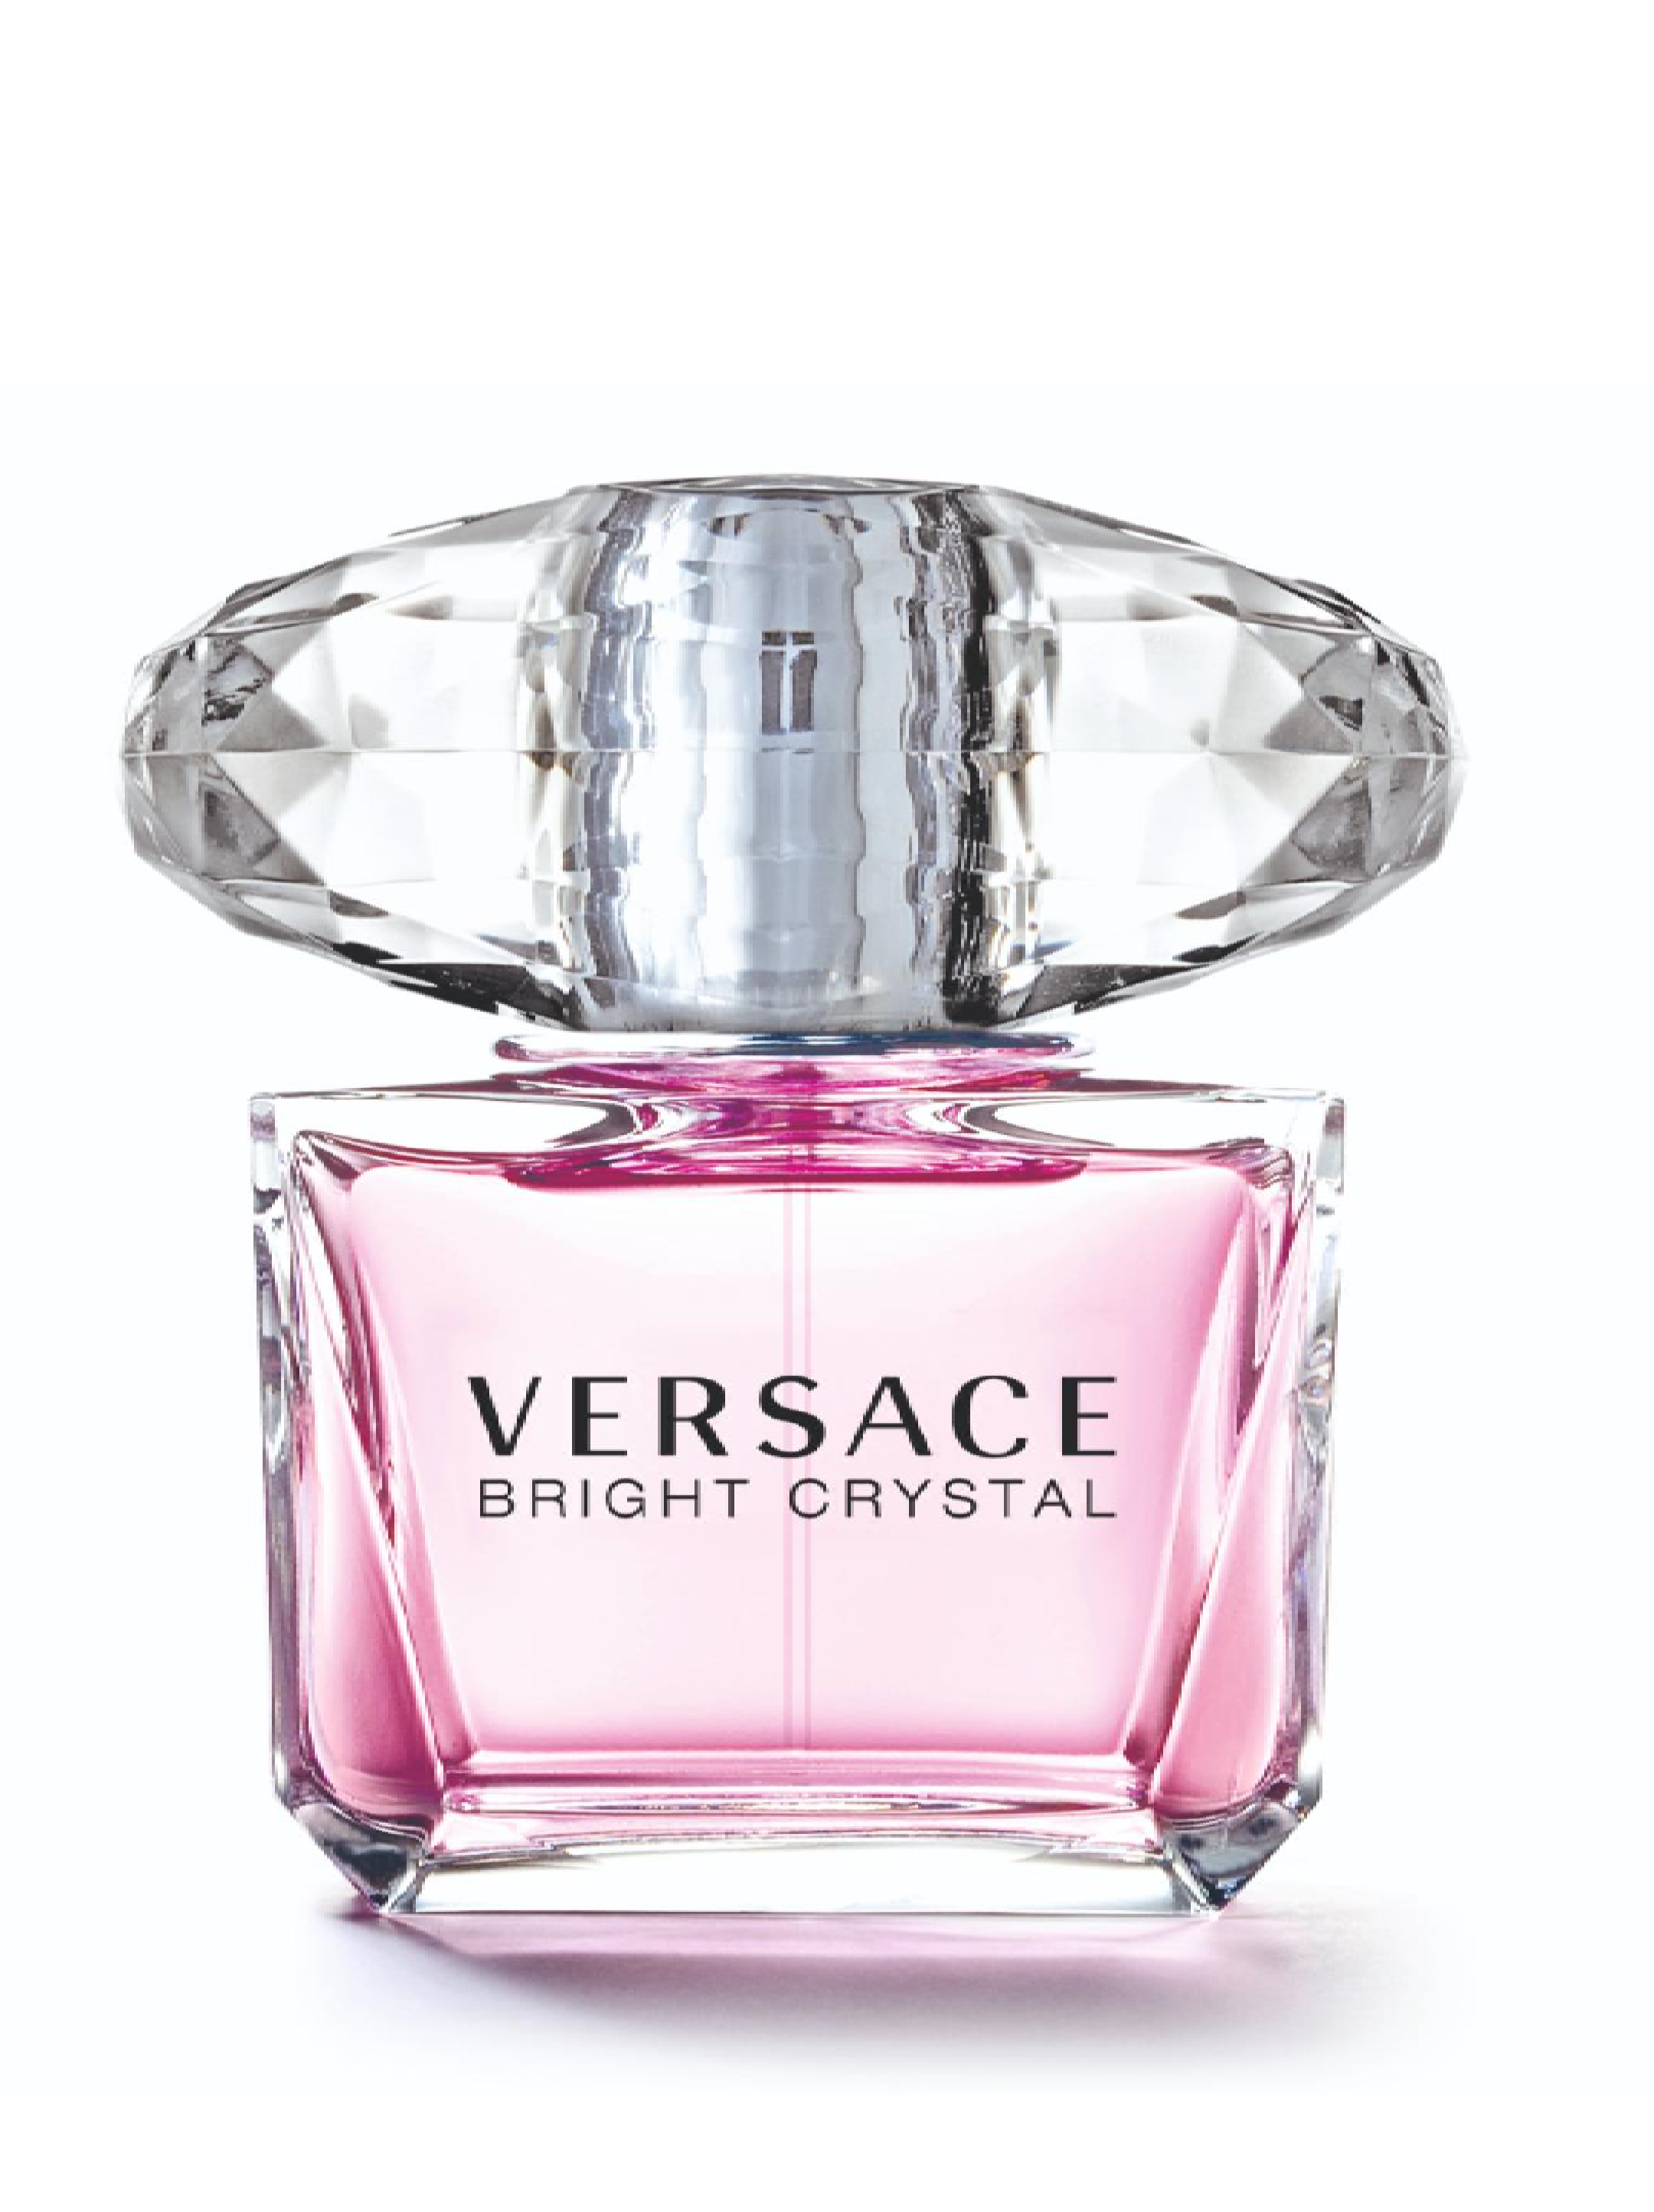 Туалетная вода женская women. Versace Bright Crystal 90ml. Versace Bright Crystal EDT 90 мл. Версаче Брайт Кристалл 30 мл. Туалетная вода Версаче Bright Crystal.